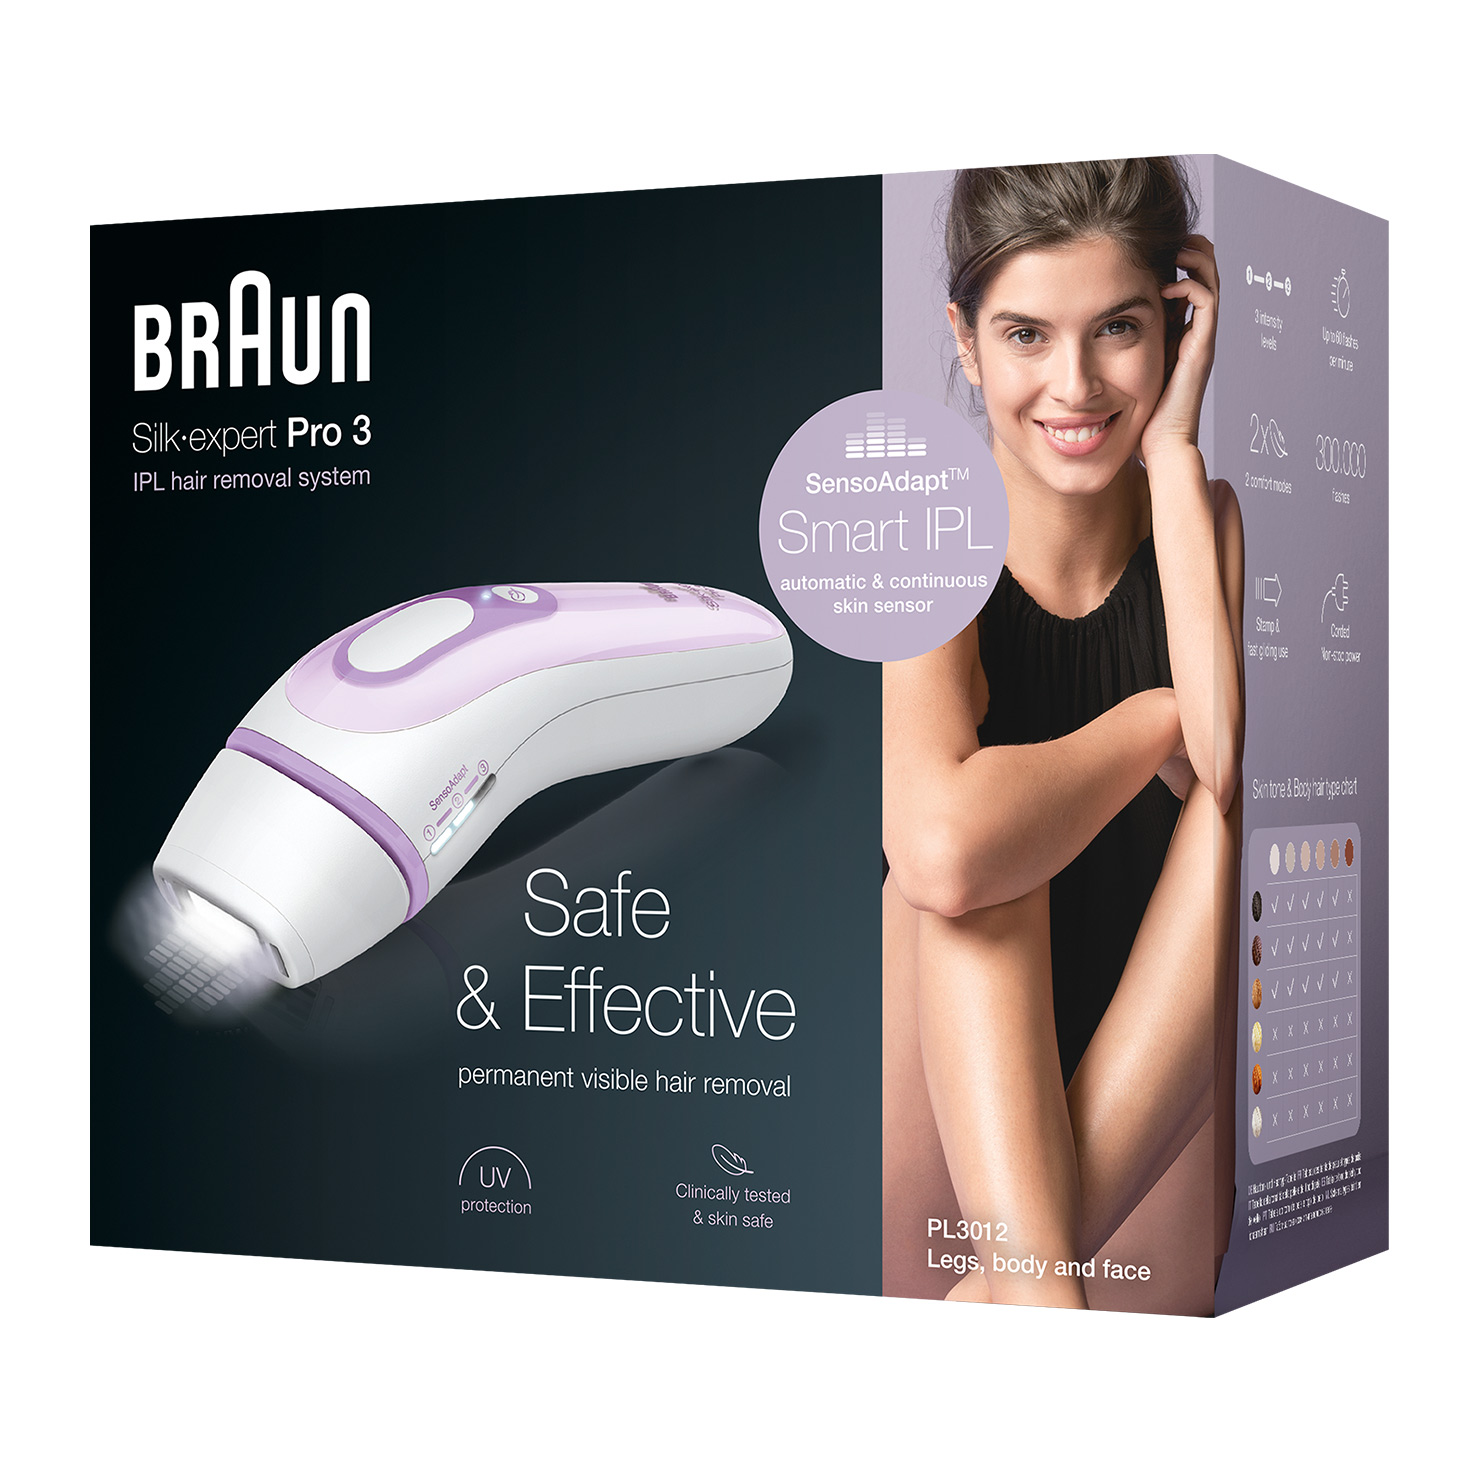 Braun Silk-expert Pro 3 PL3012 - Packaging